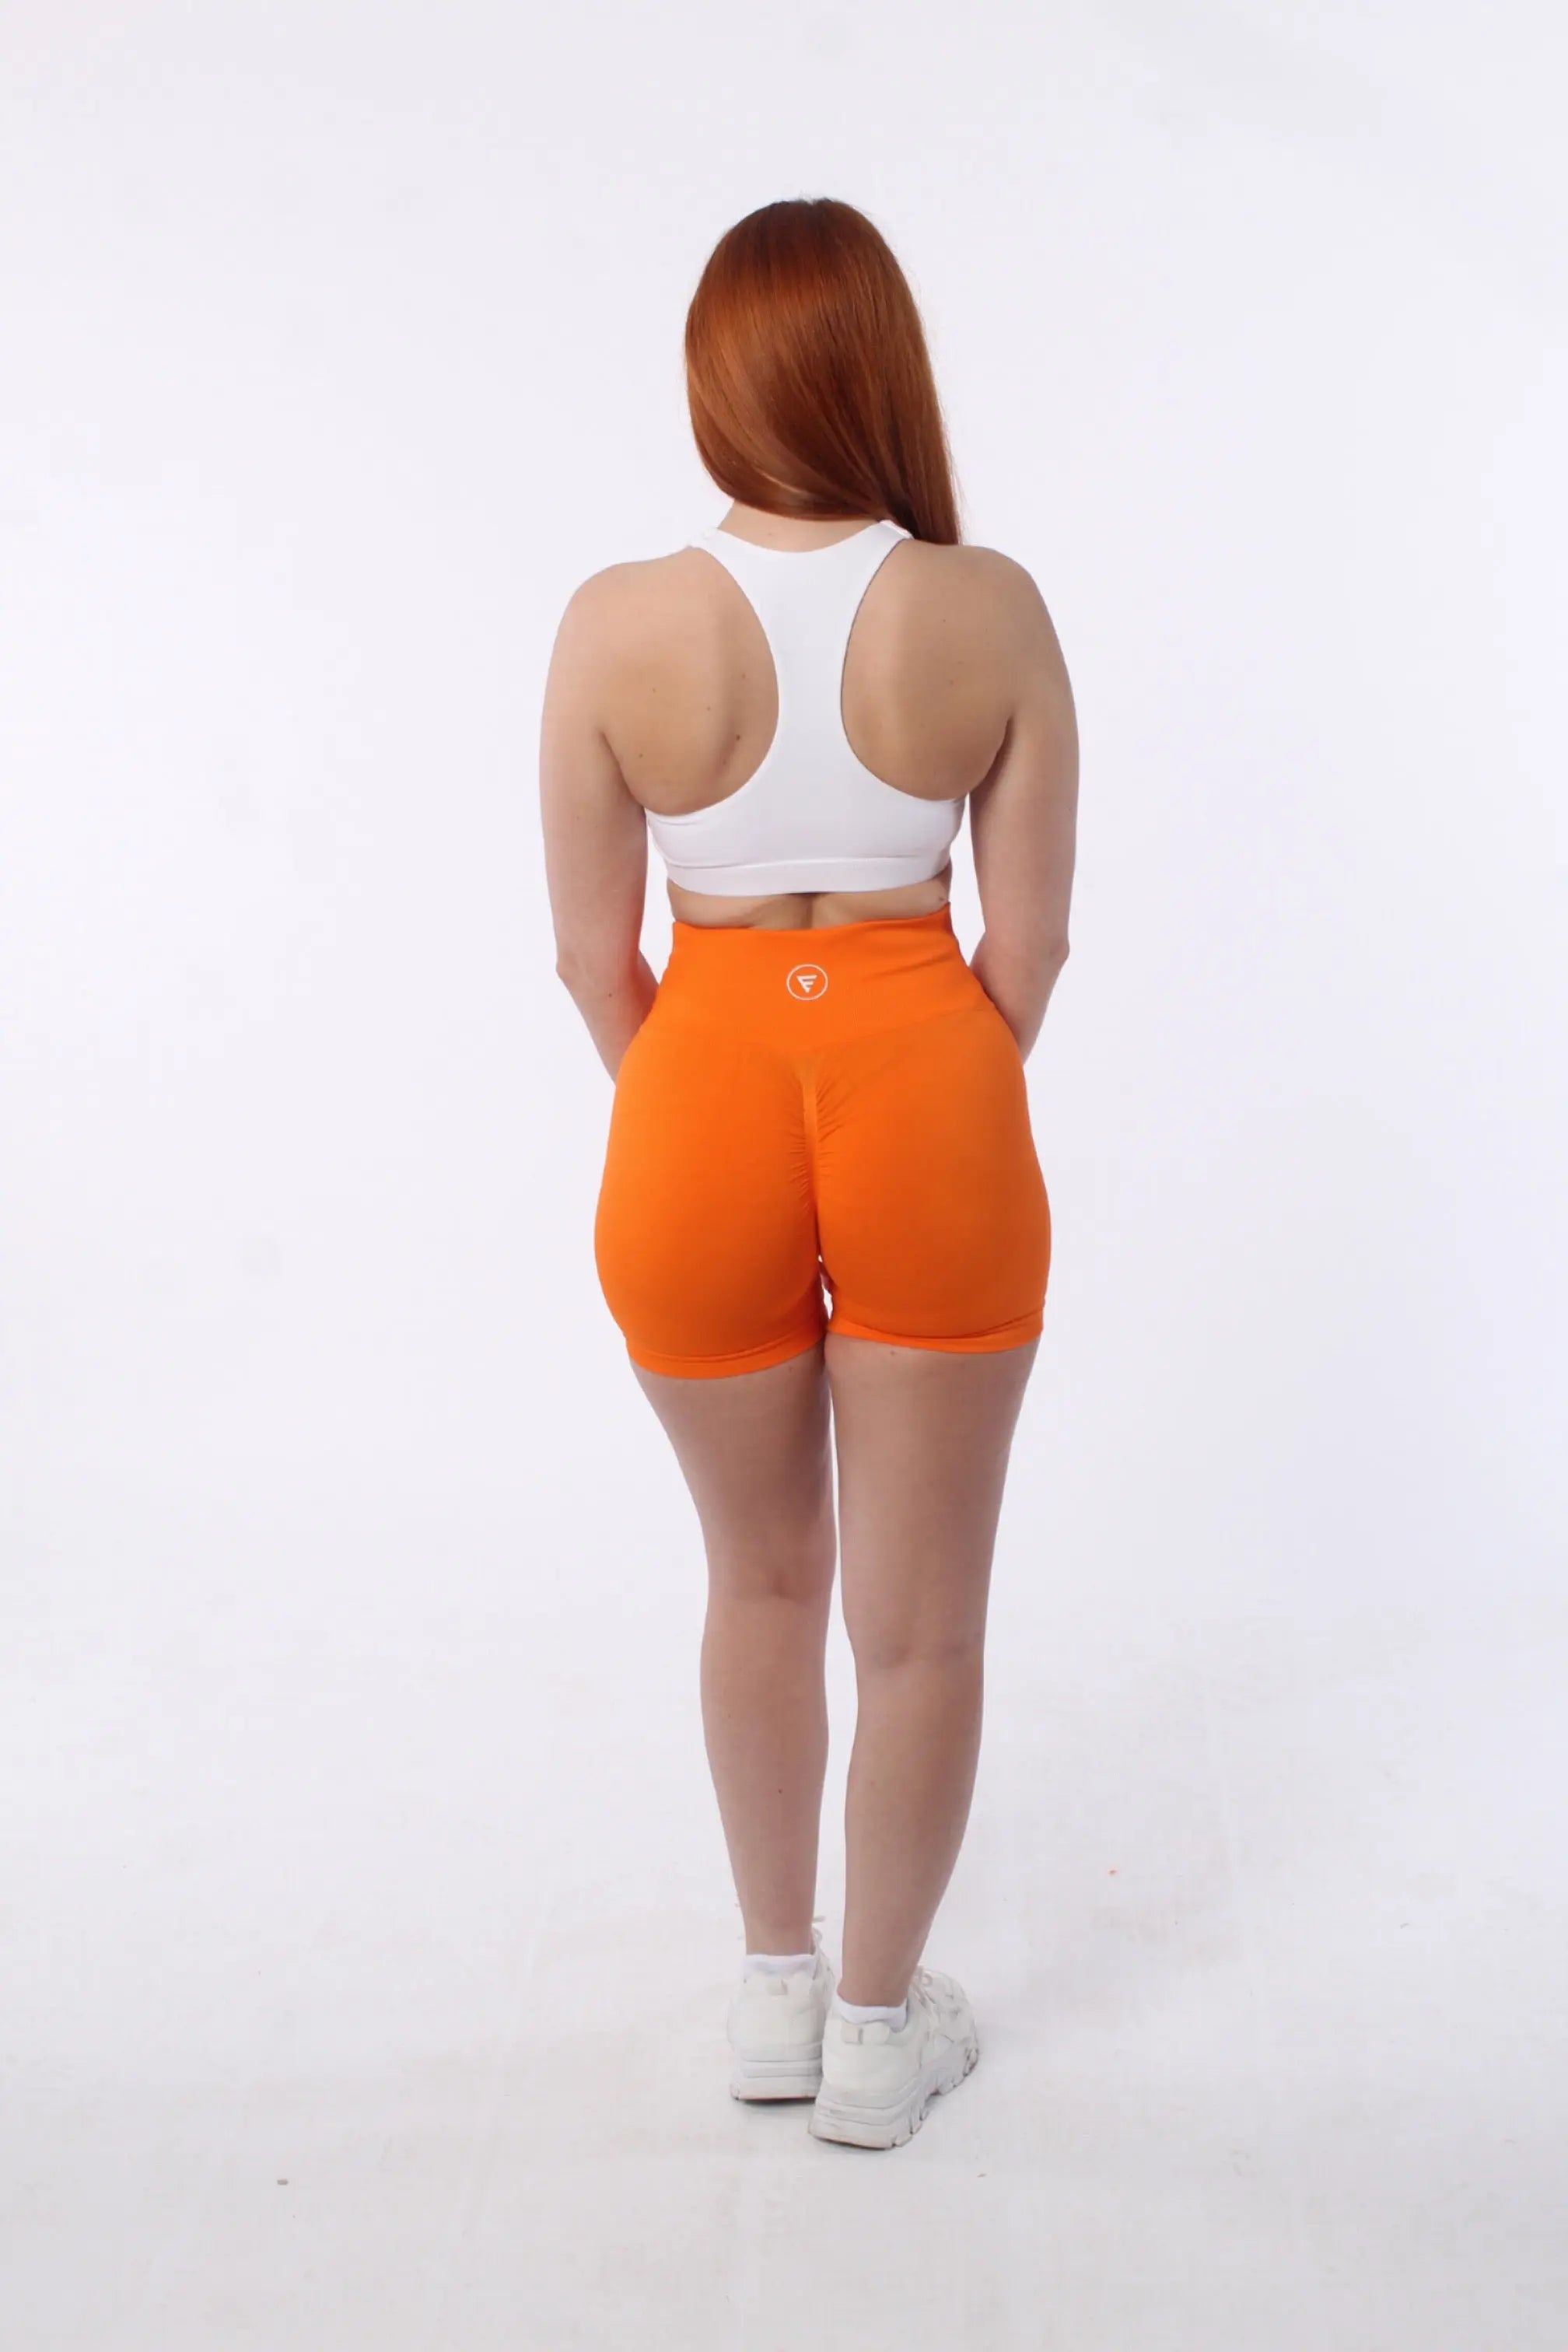 The Nakd Scrunch Collection - Scrunch Bum Gym Shorts In Orange